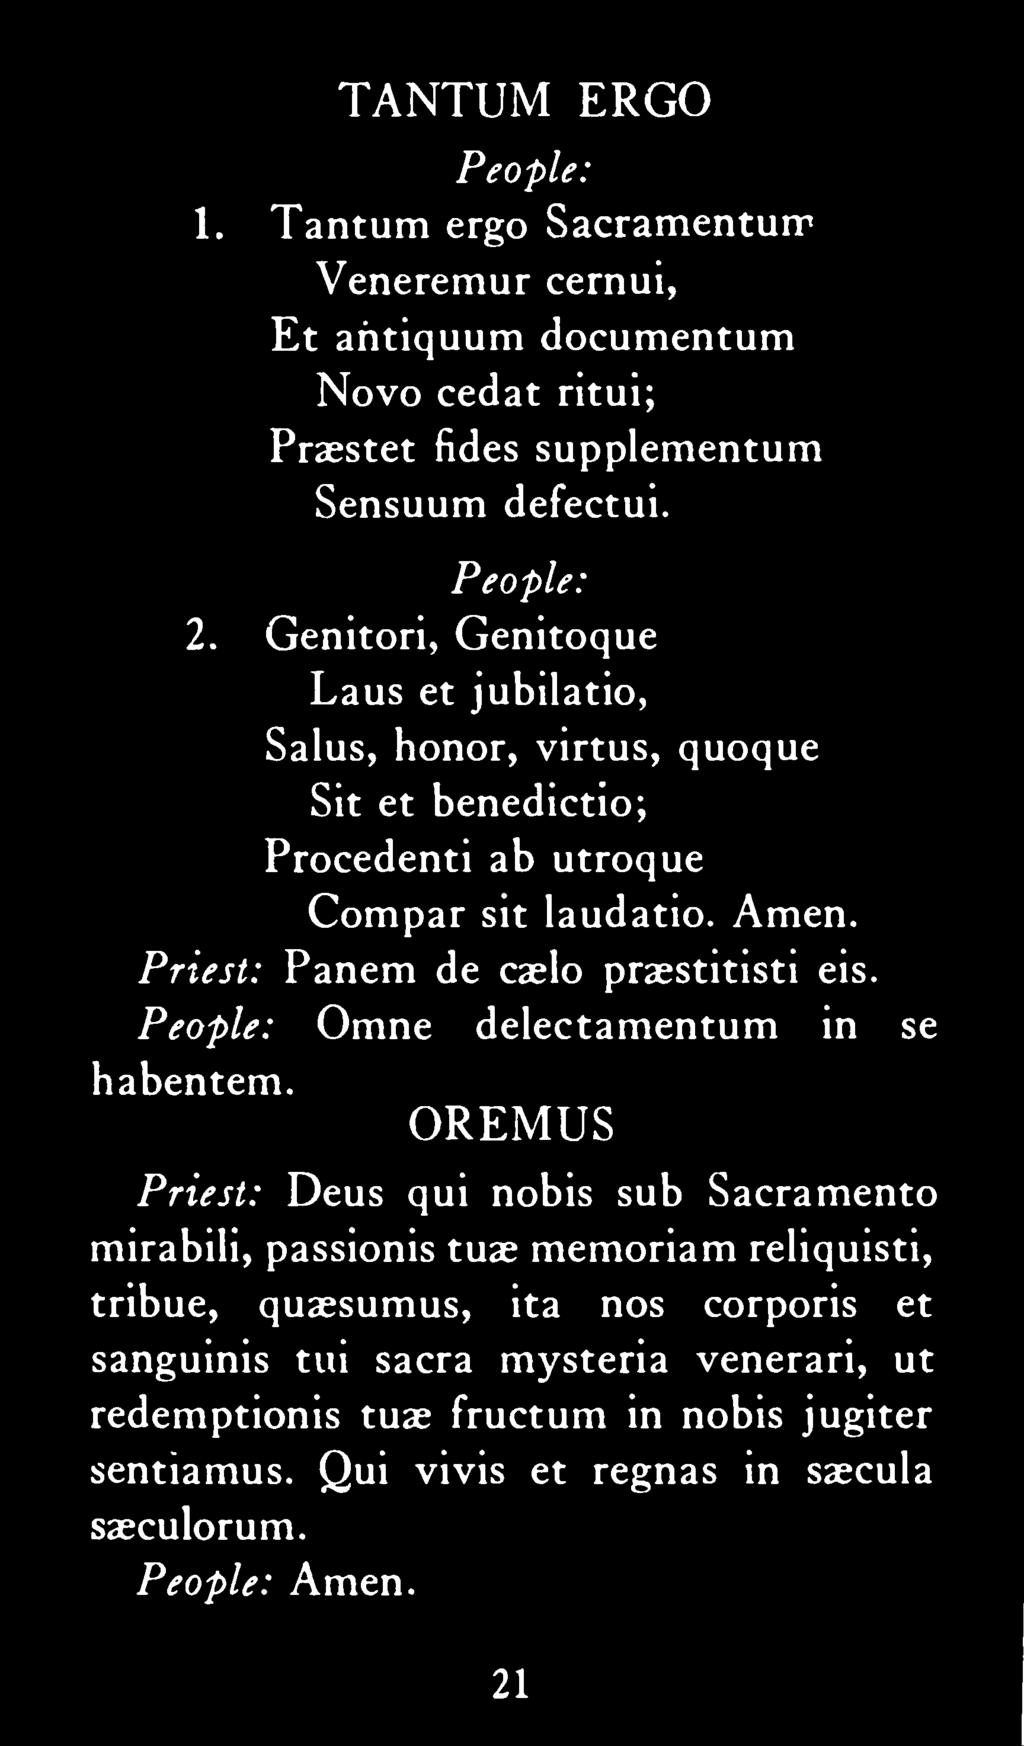 Priest: Panem de caelo praestitisti eis. People: Omne delectamentum in se habentem.